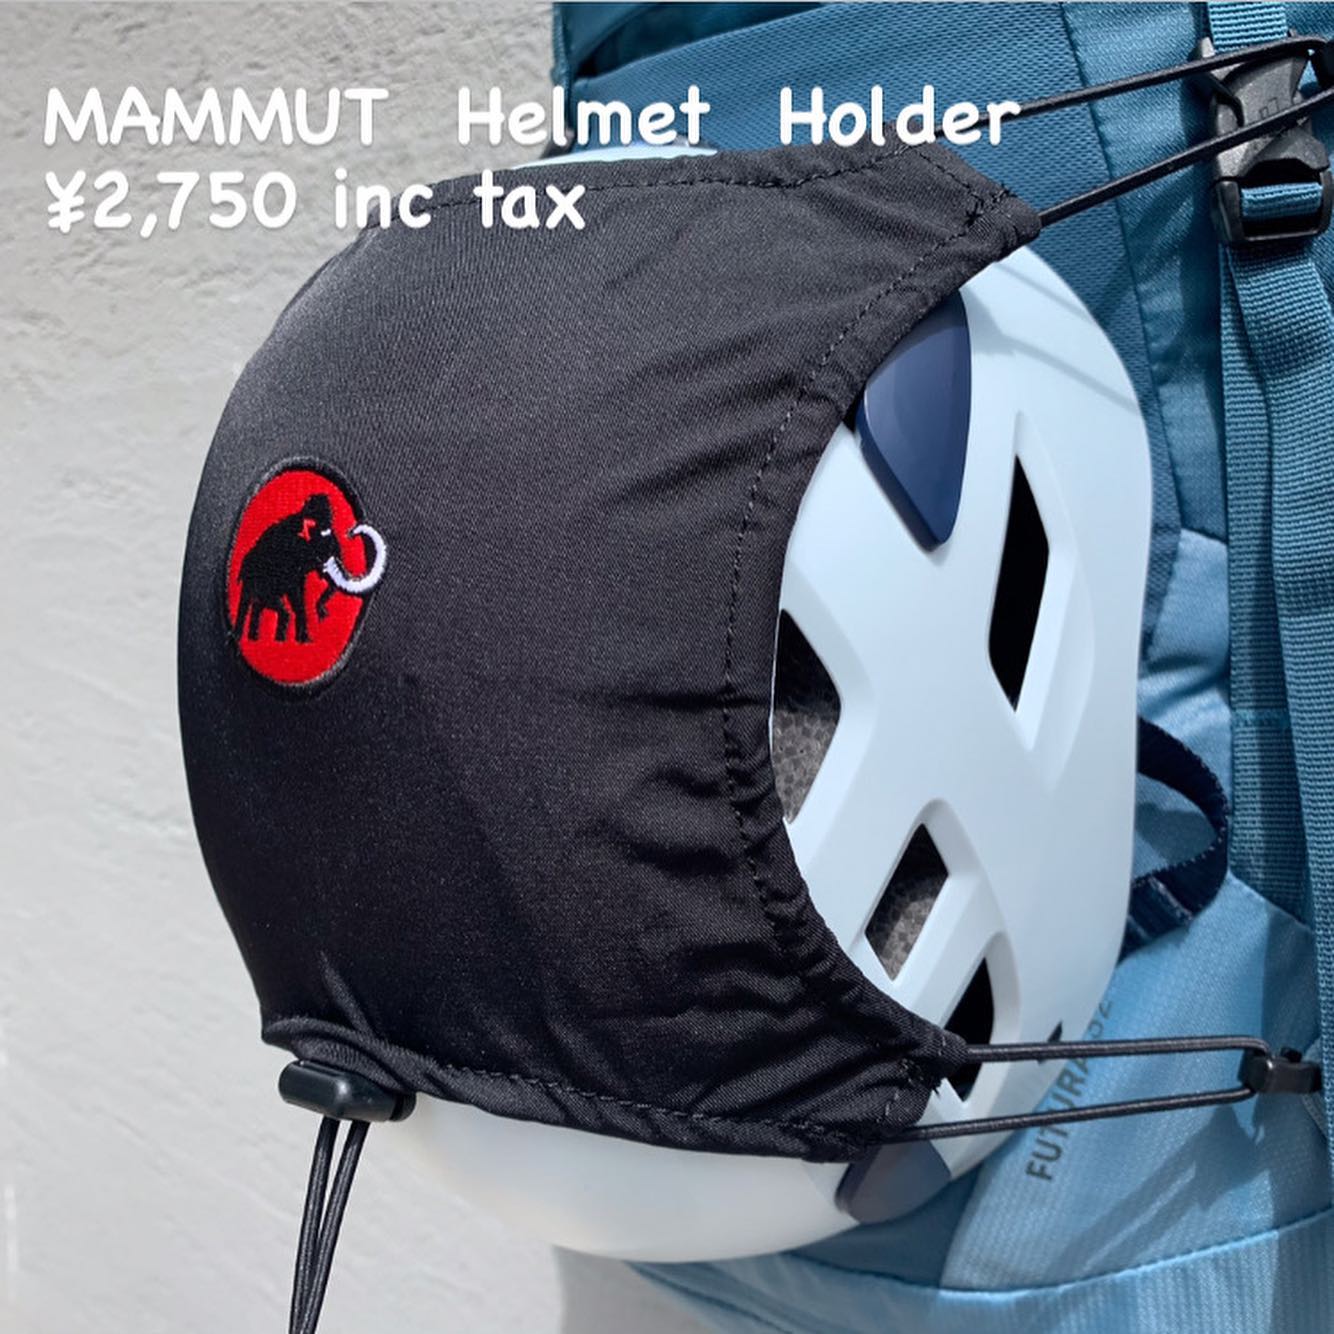 『MAMMUT ヘルメットホルダー』のご紹介